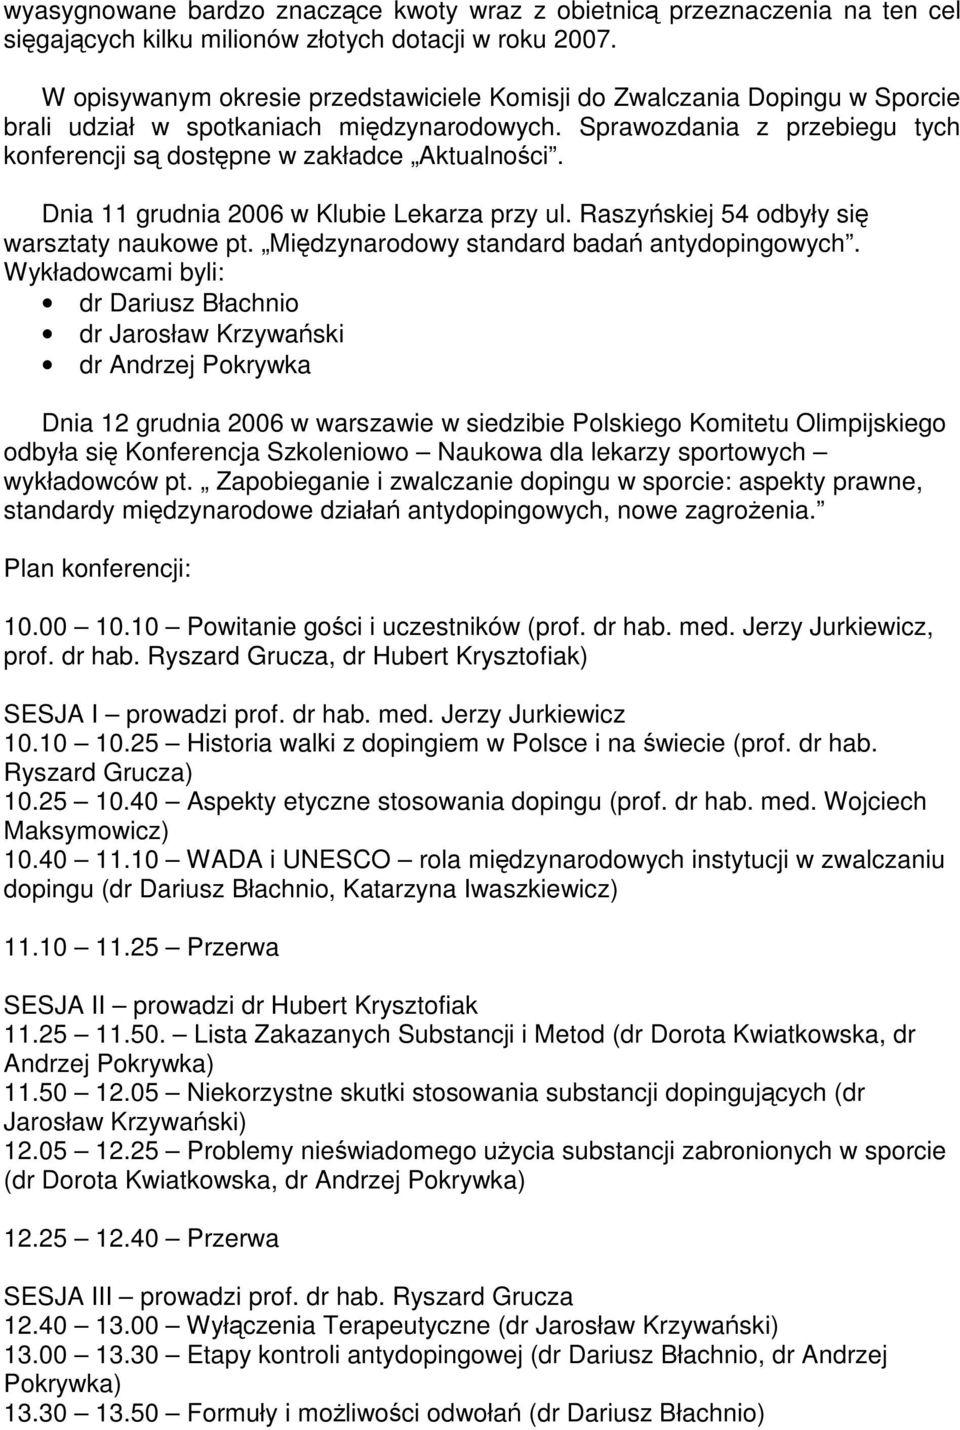 Dnia 11 grudnia 2006 w Klubie Lekarza przy ul. Raszyskiej 54 odbyły si warsztaty naukowe pt. Midzynarodowy standard bada antydopingowych.